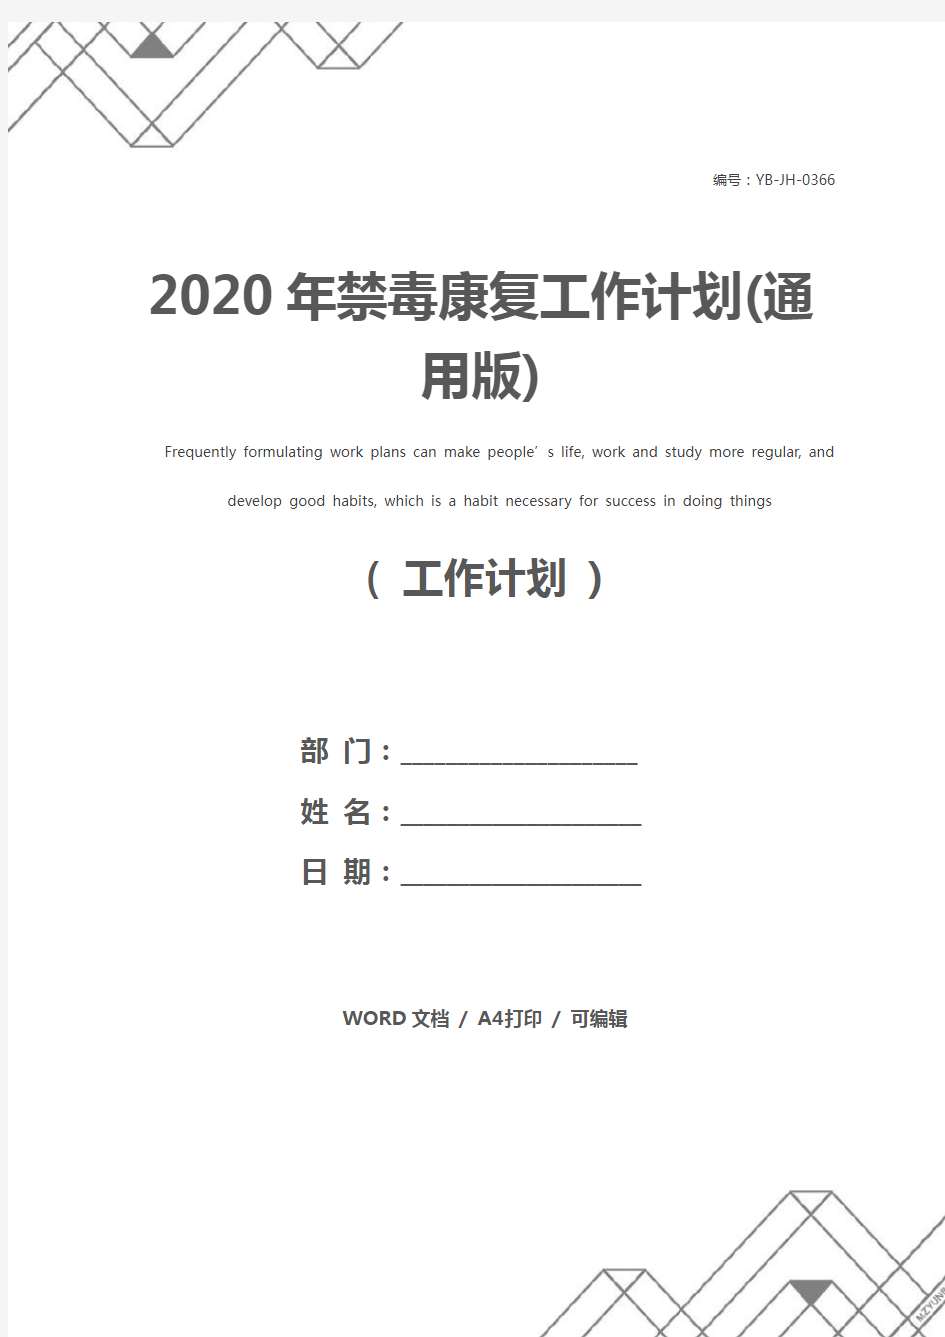 2020年禁毒康复工作计划(通用版)